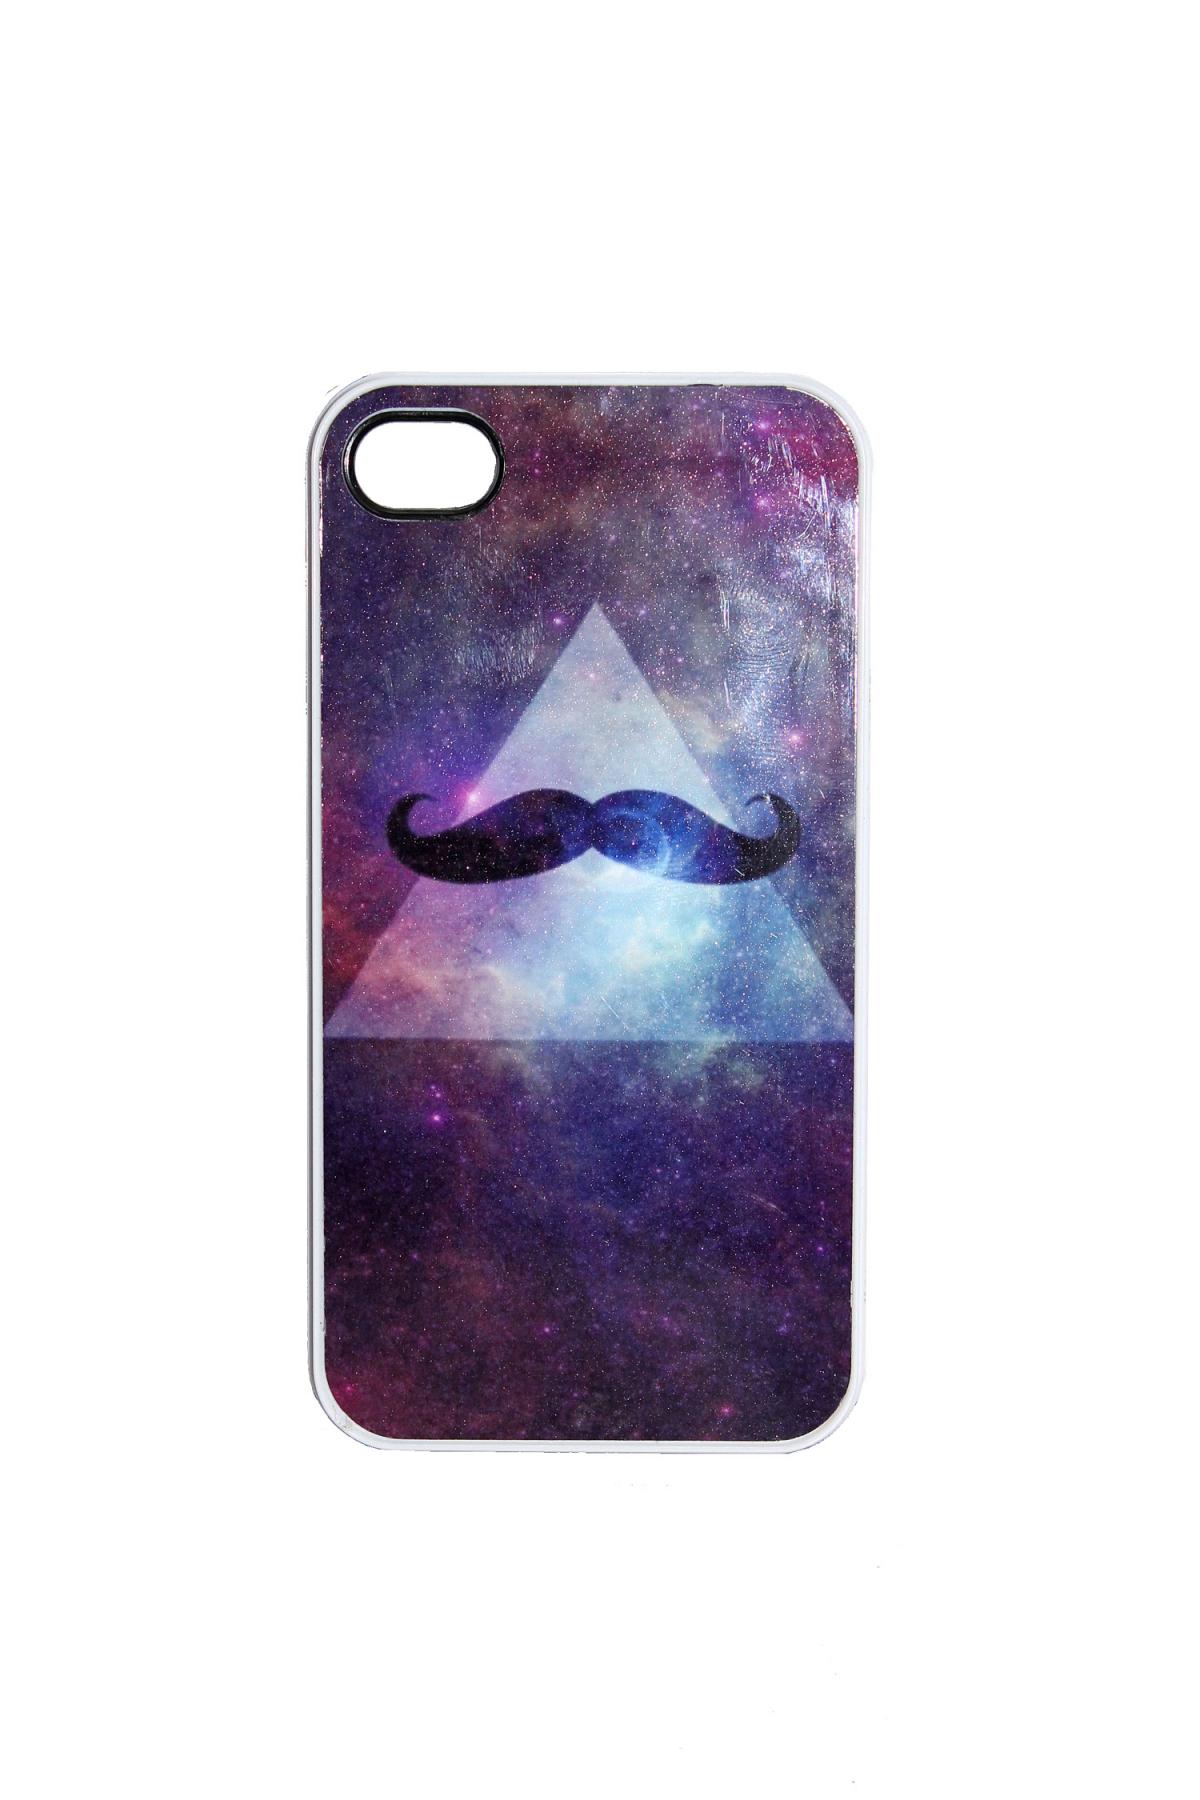 nebula mustache